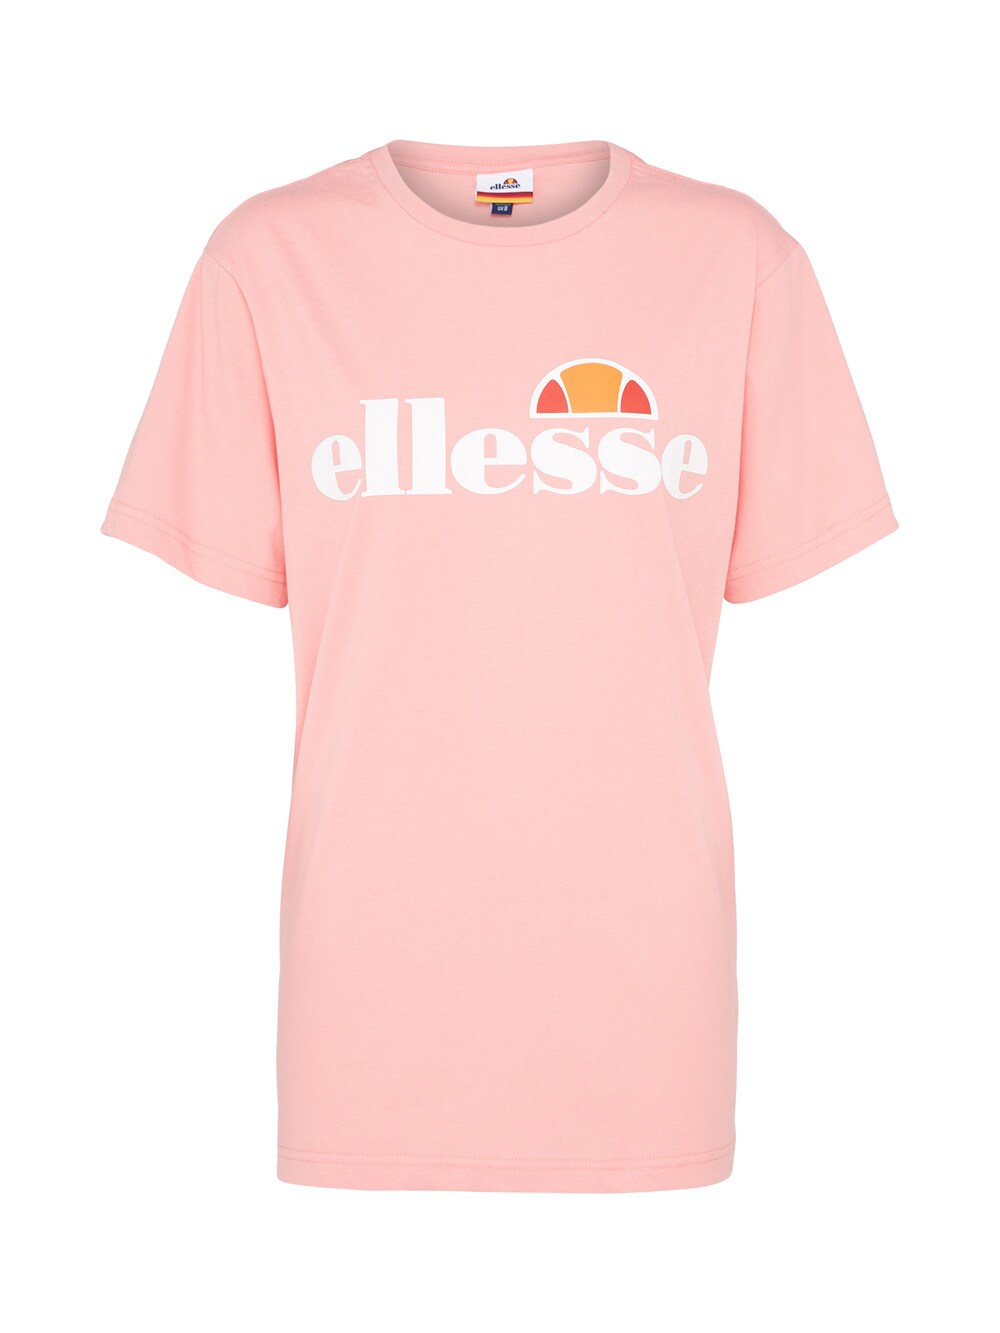 Рубашка ELLESSE Albany, розовый